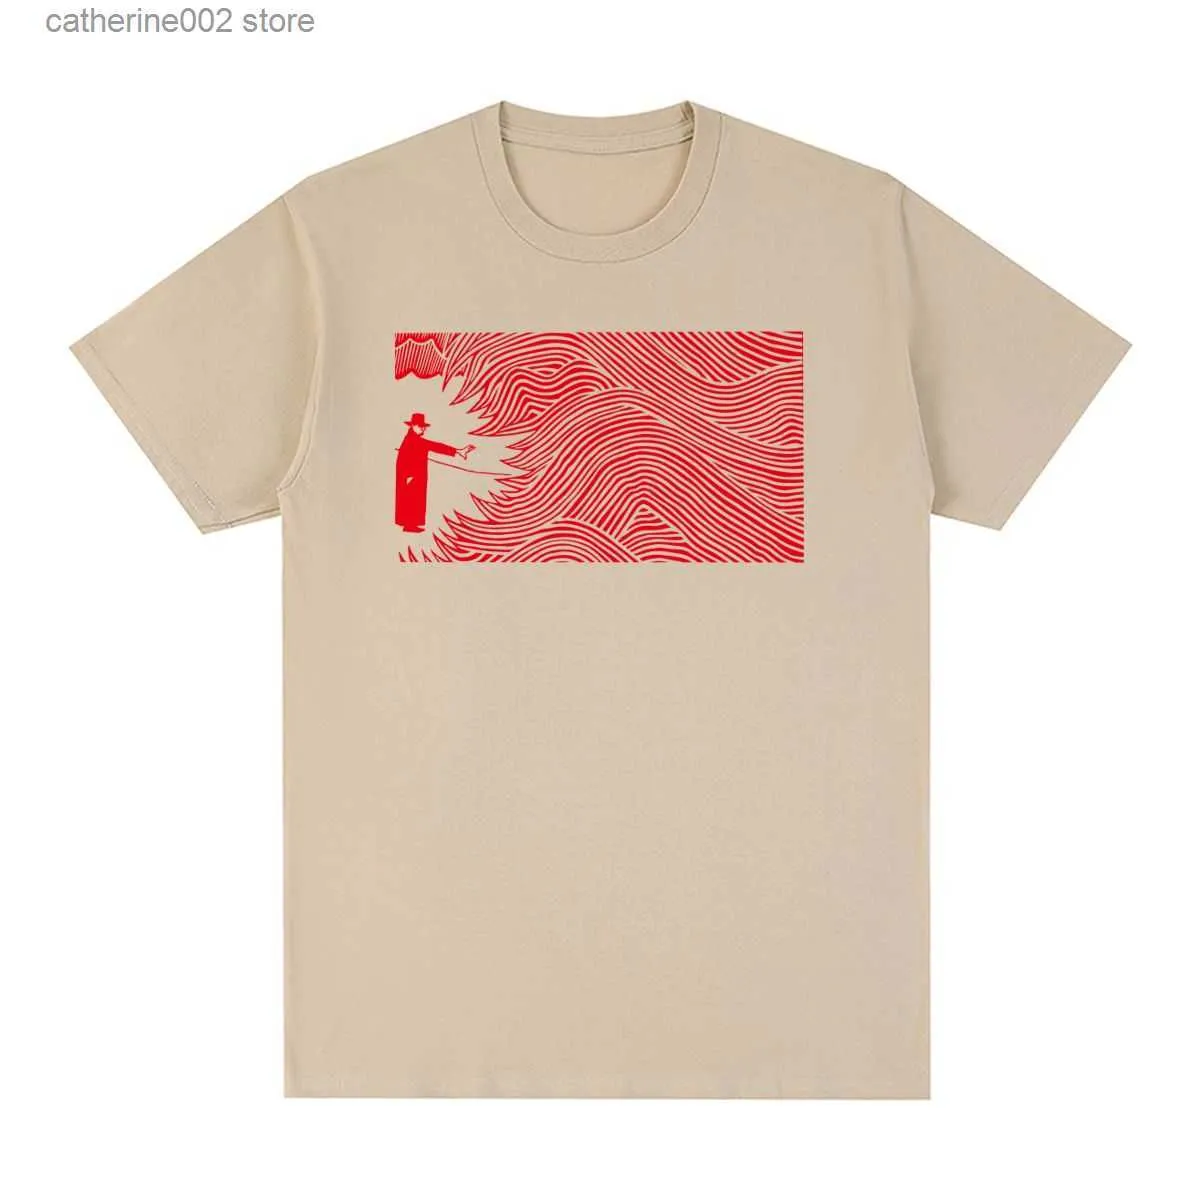 Men's T-Shirts Radiohead Thom Yorke Vintage T-shirt Music Rock Band Cotton Men T shirt New Tee Tshirt Womens Tops T230601